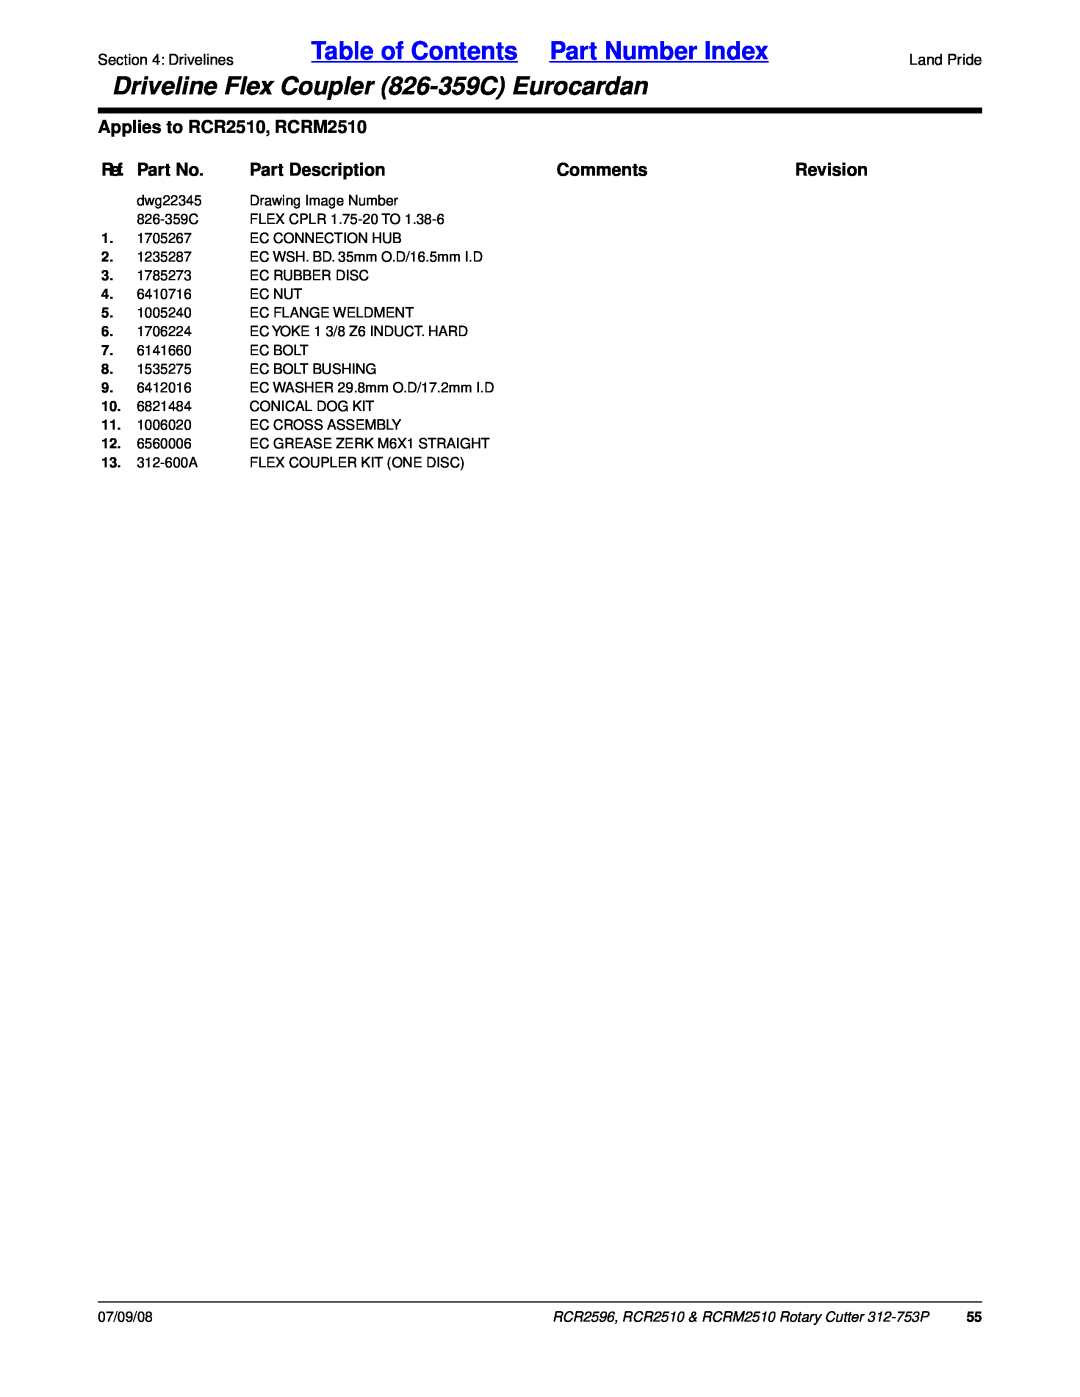 Land Pride RCRM2510 Table of Contents Part Number Index, Driveline Flex Coupler 826-359CEurocardan, Ref. Part No, Comments 